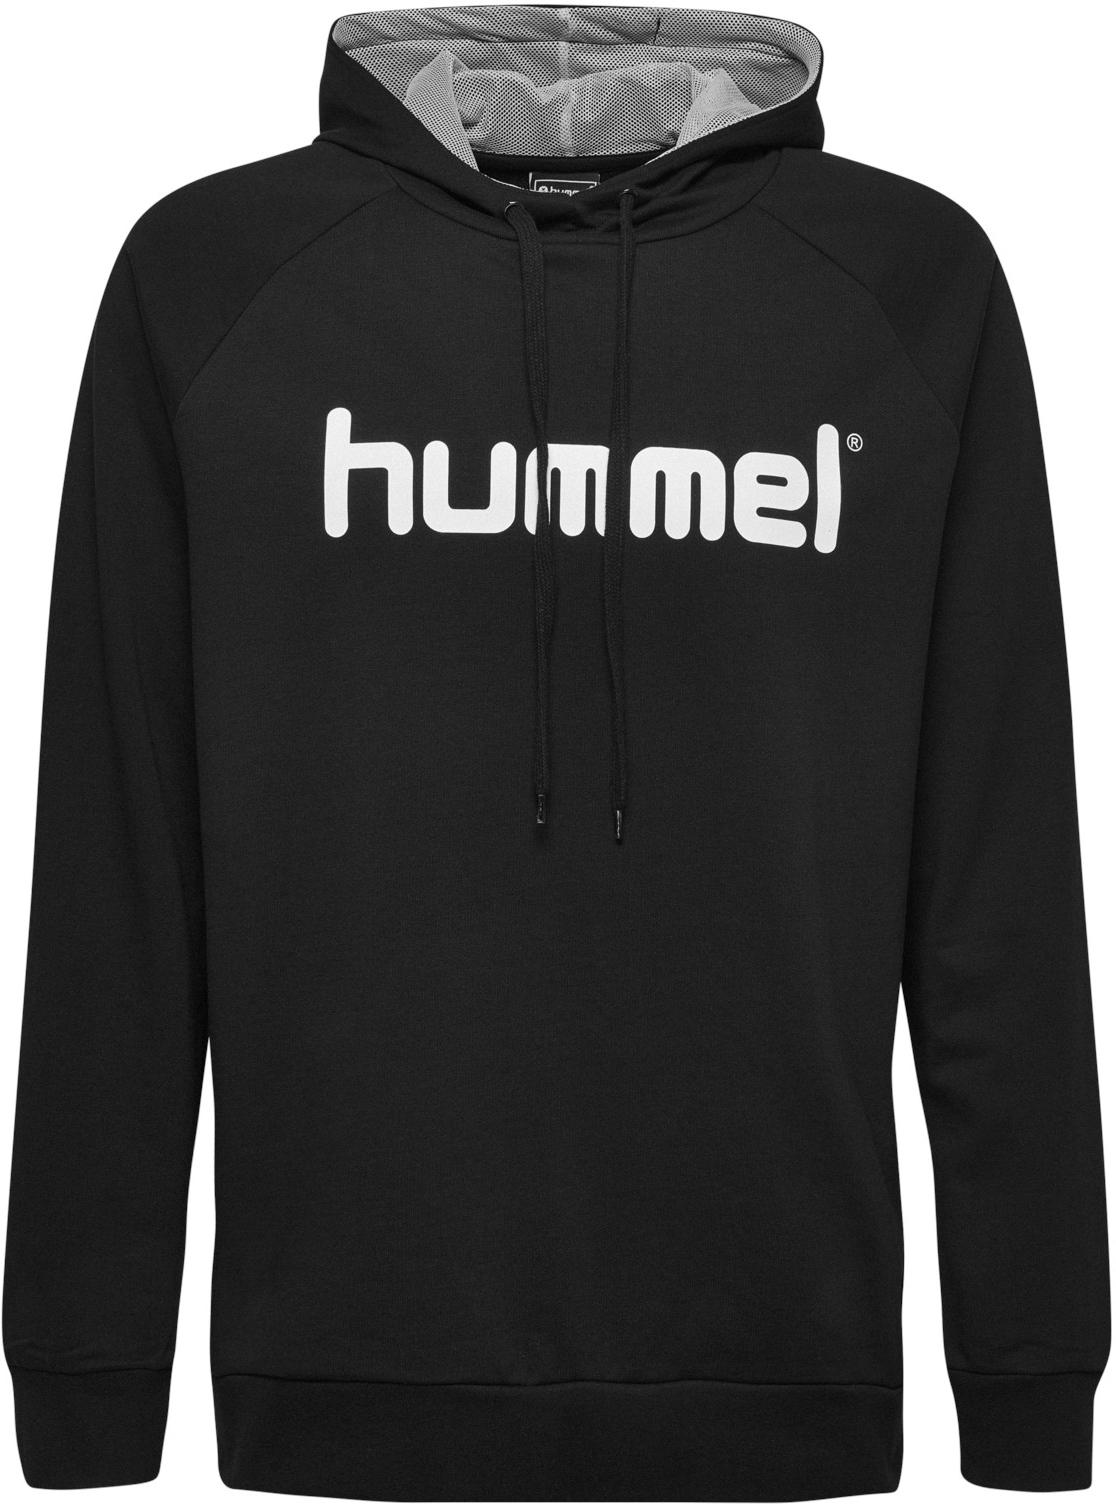 Φούτερ-Jacket με κουκούλα hummel cotton logo hoody 01